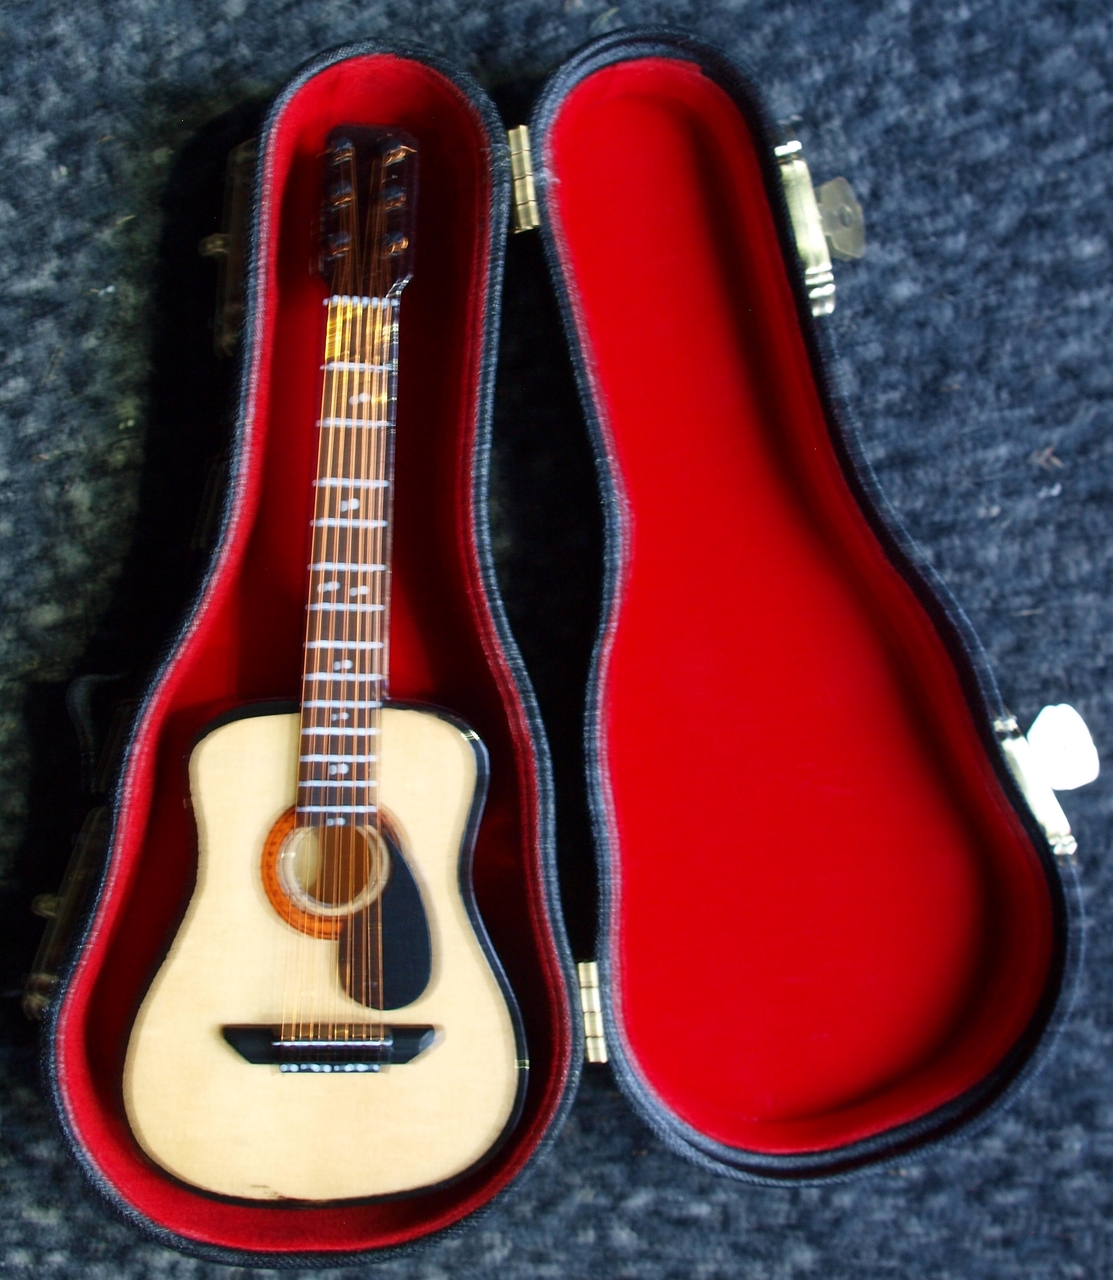 Gedragen melk wit roman Miniatuur western gitaar met koffer - Muziekinstrumenten online winkel |  Instruments Online webshop